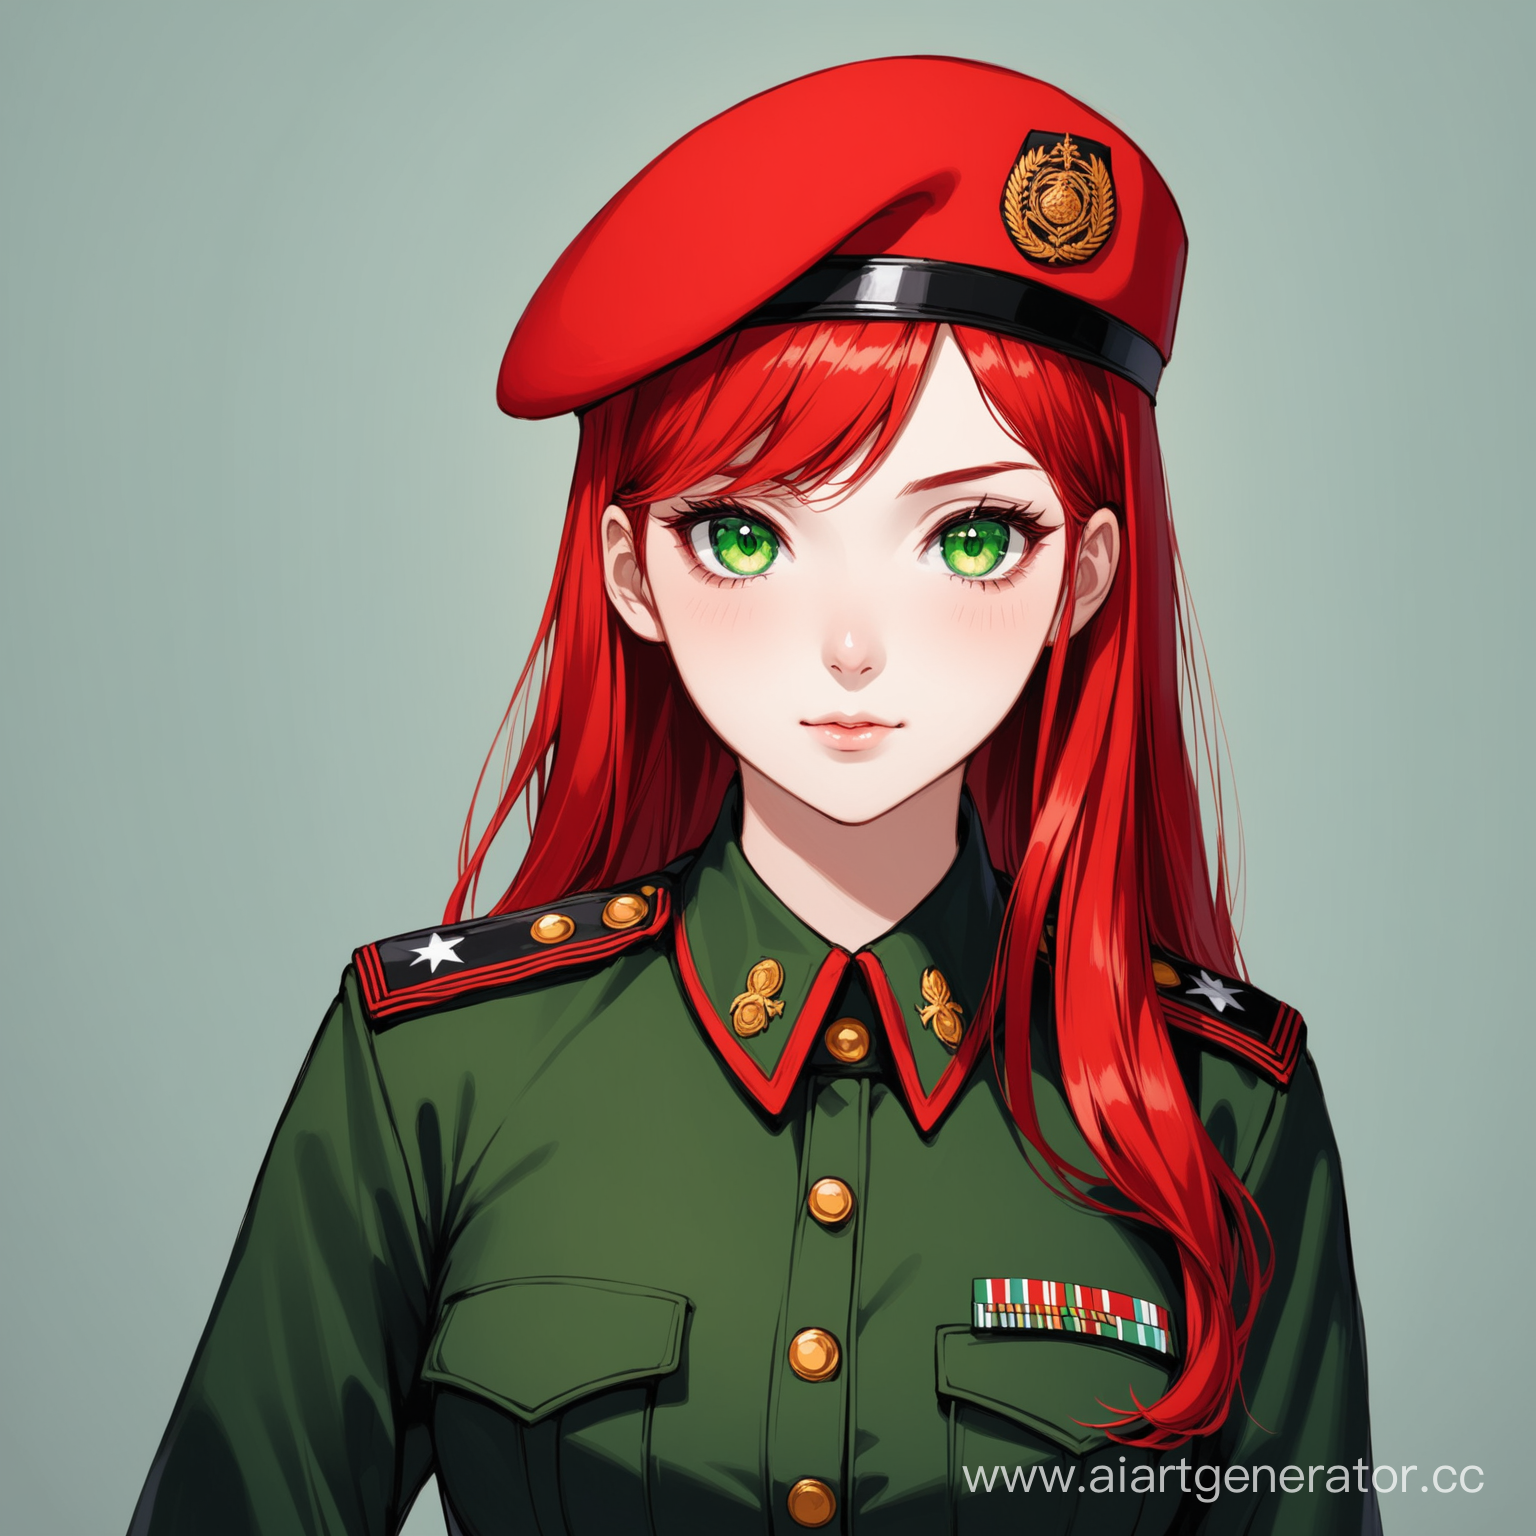 рыжая девушка с зелёными глазами, одета в военную форму чёрного и красного цвета, на голове красный берет